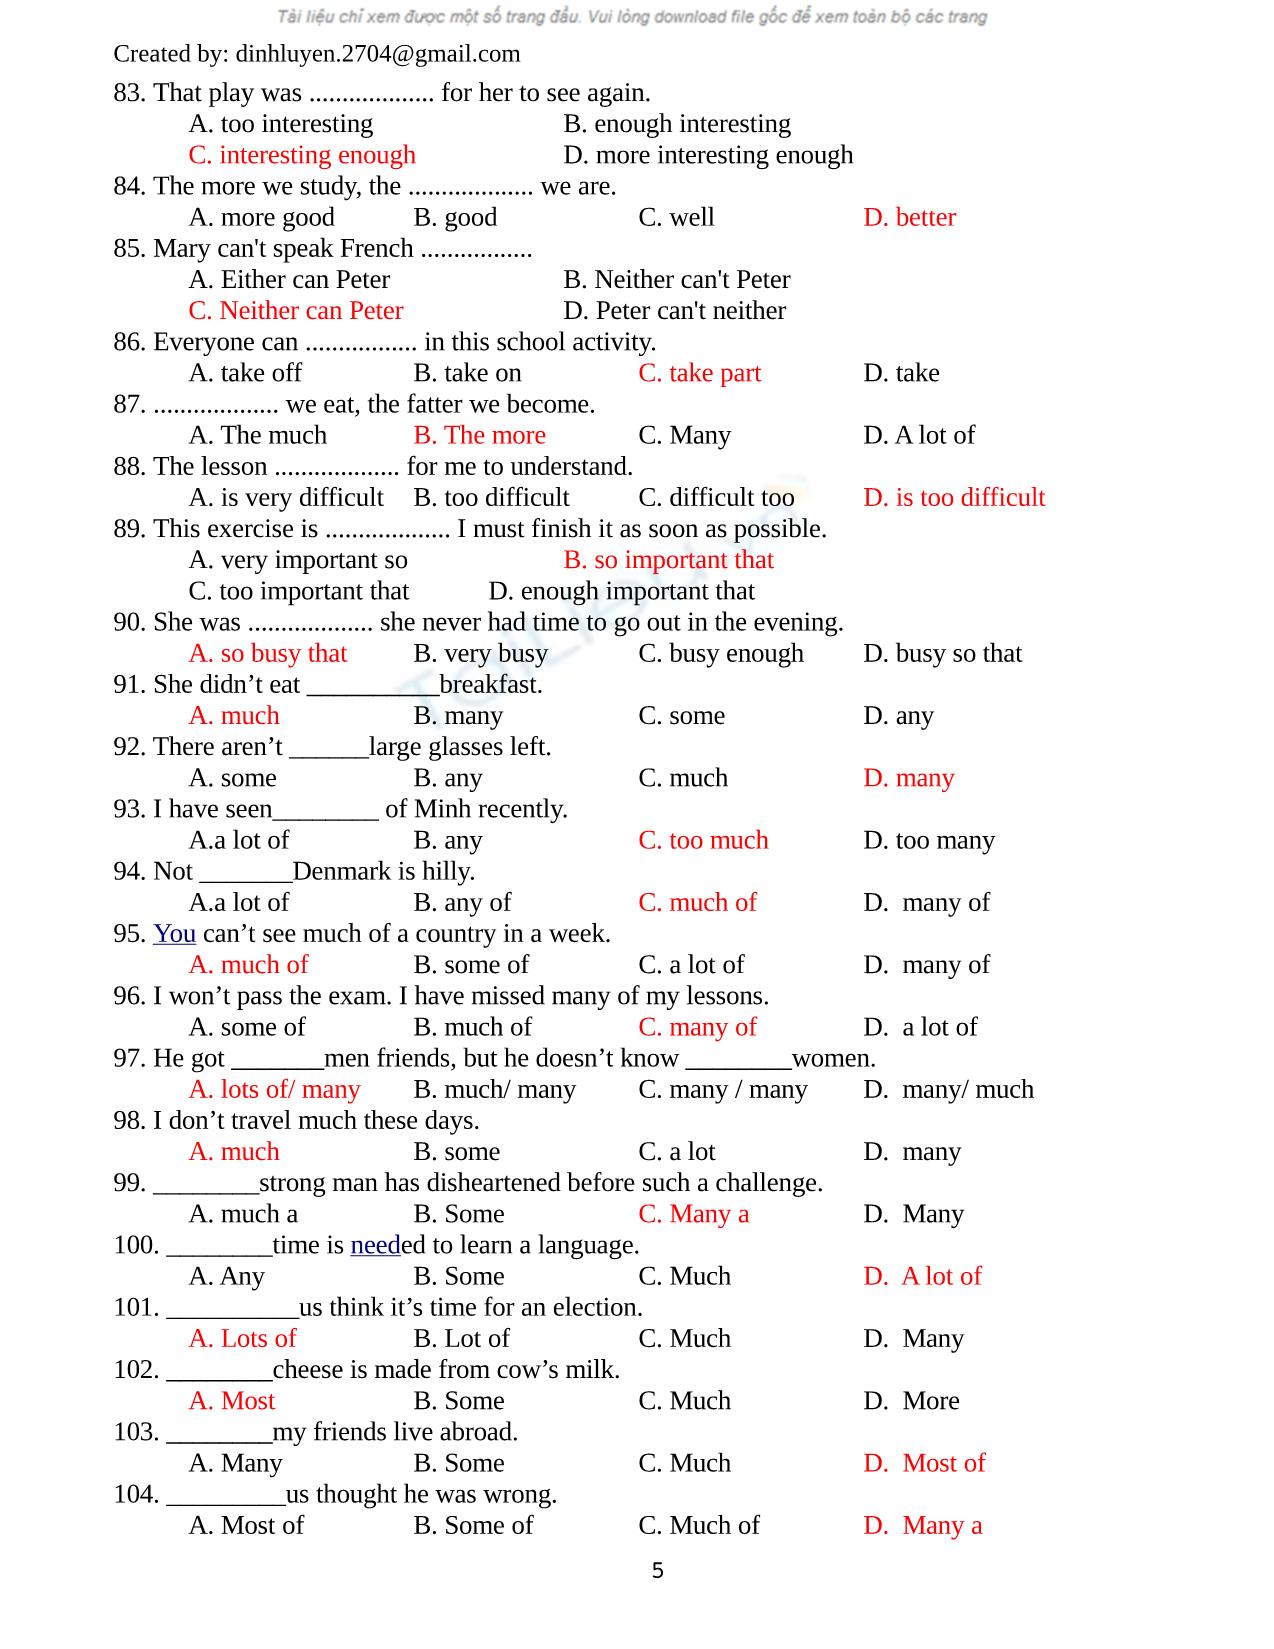 Bài tập trắng nghiệm môn tiếng Anh (Có đáp án) trang 5